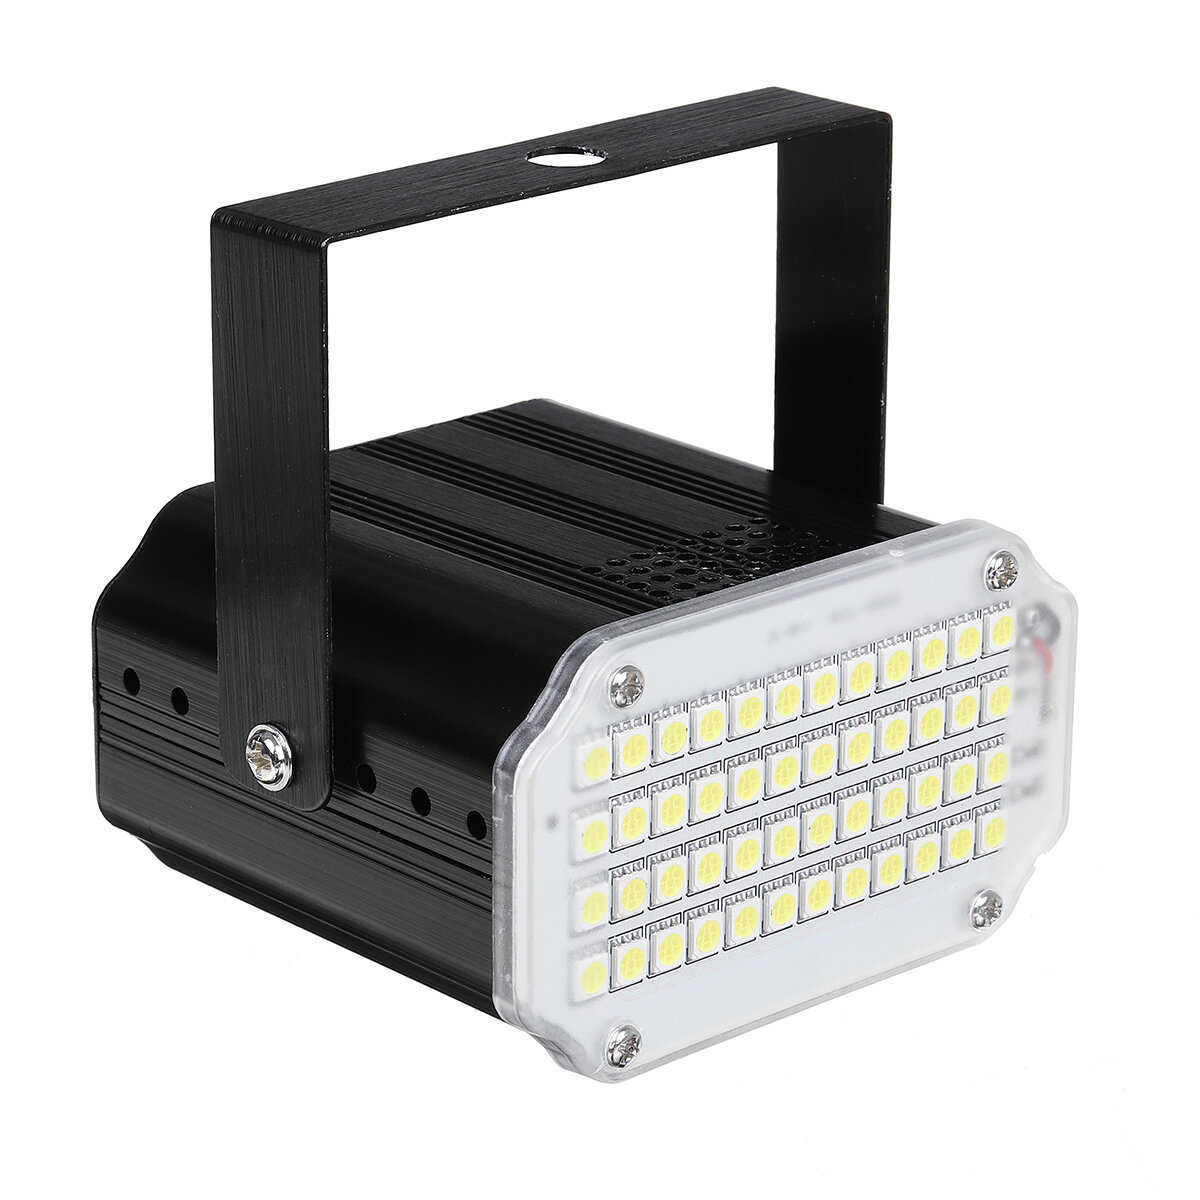 48 قطعة SMD LED ستروب ضوء المرحلة ضوءing Mini KTV غرفة خاصة انفجار وامض ضوء قفز دي وامض بار ضوء